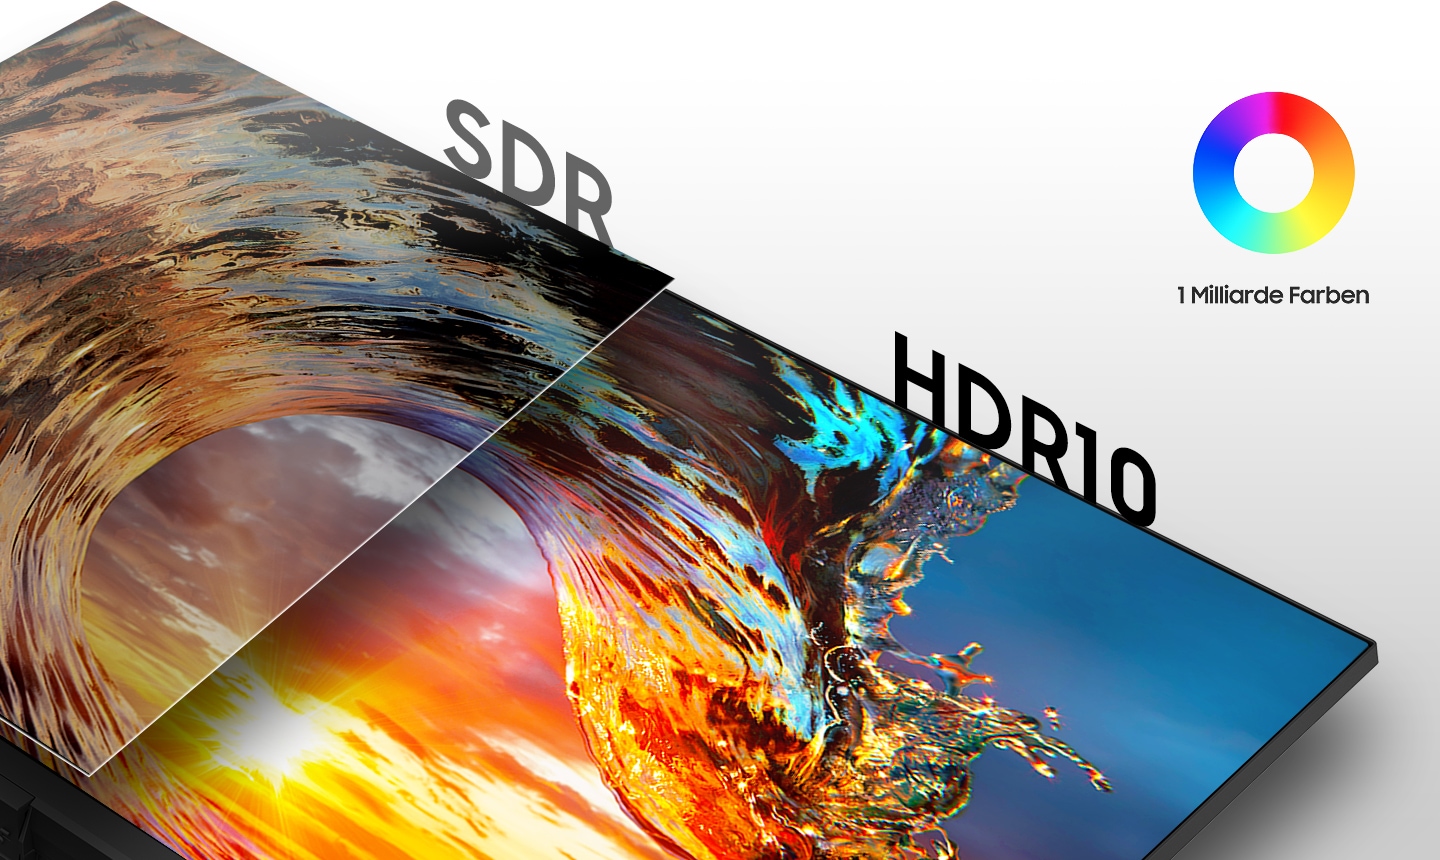 Usporedba zaslona SDR na lijevoj strani i HDR10 zaslona na desnoj strani.  U gornjem desnom kutu nalazi se ikona milijarde boja.